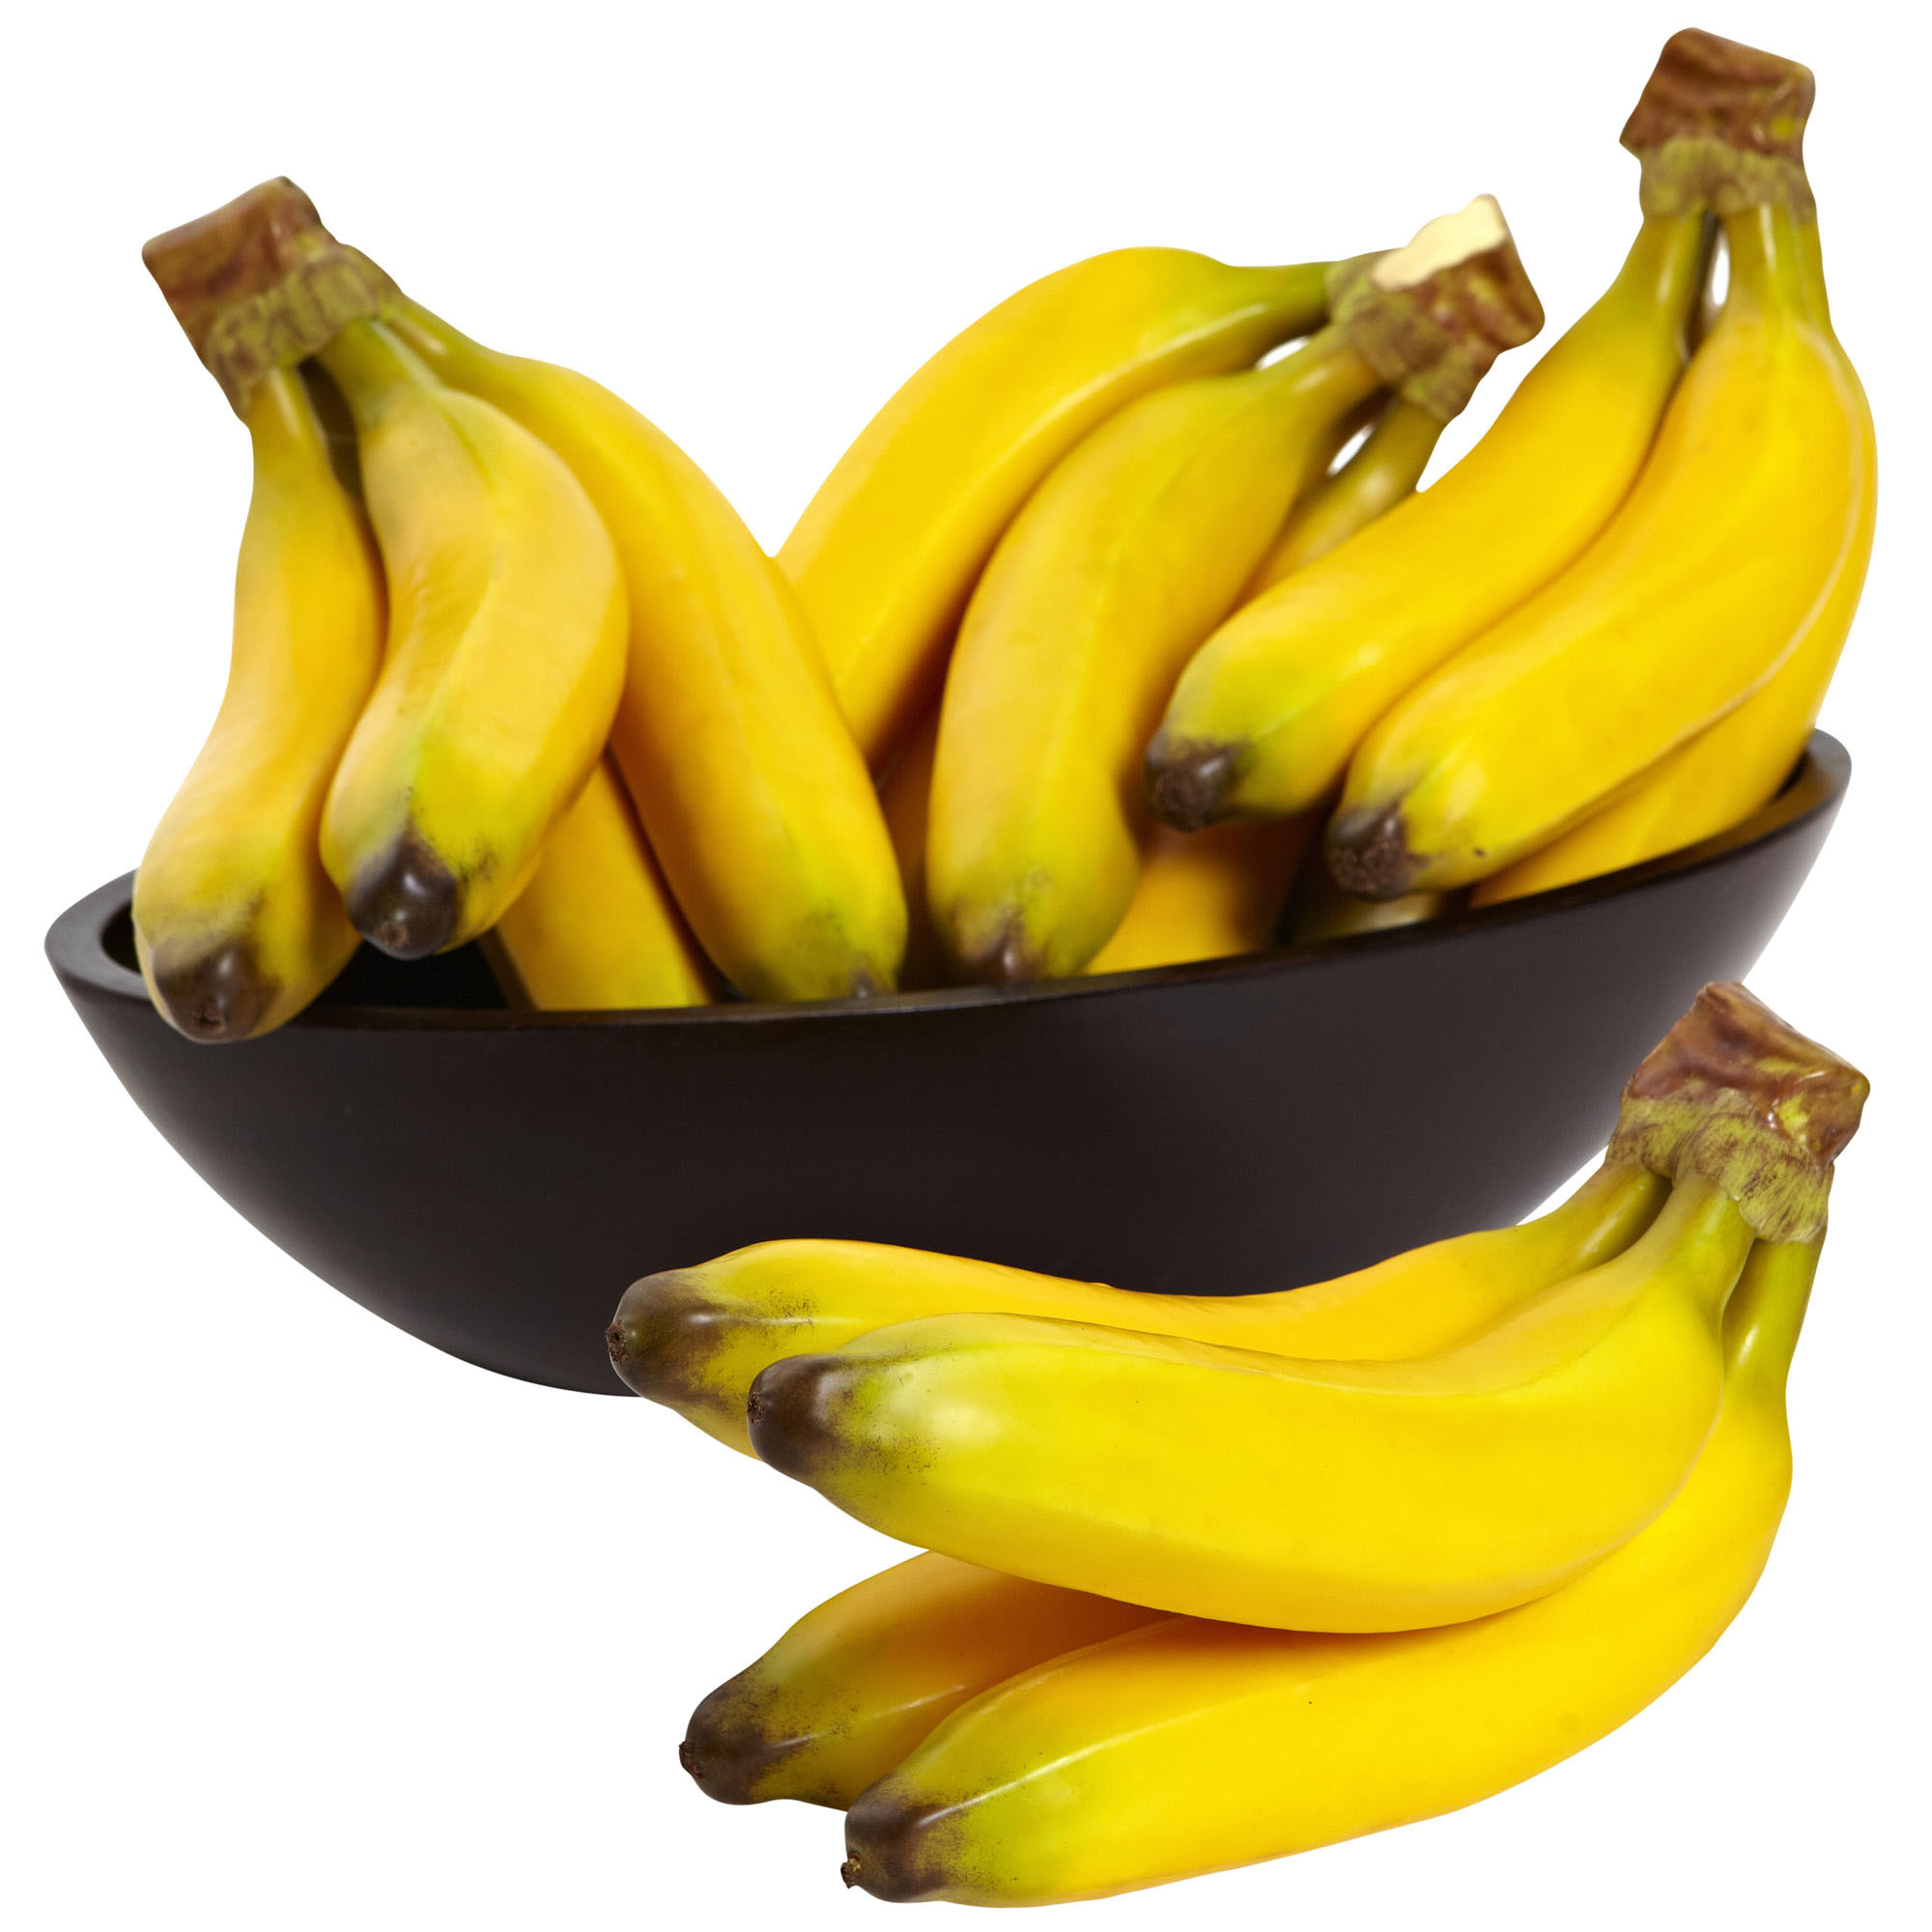 9 Inch x 6 Inch Artificial Banana Bunch - Amazing Produce